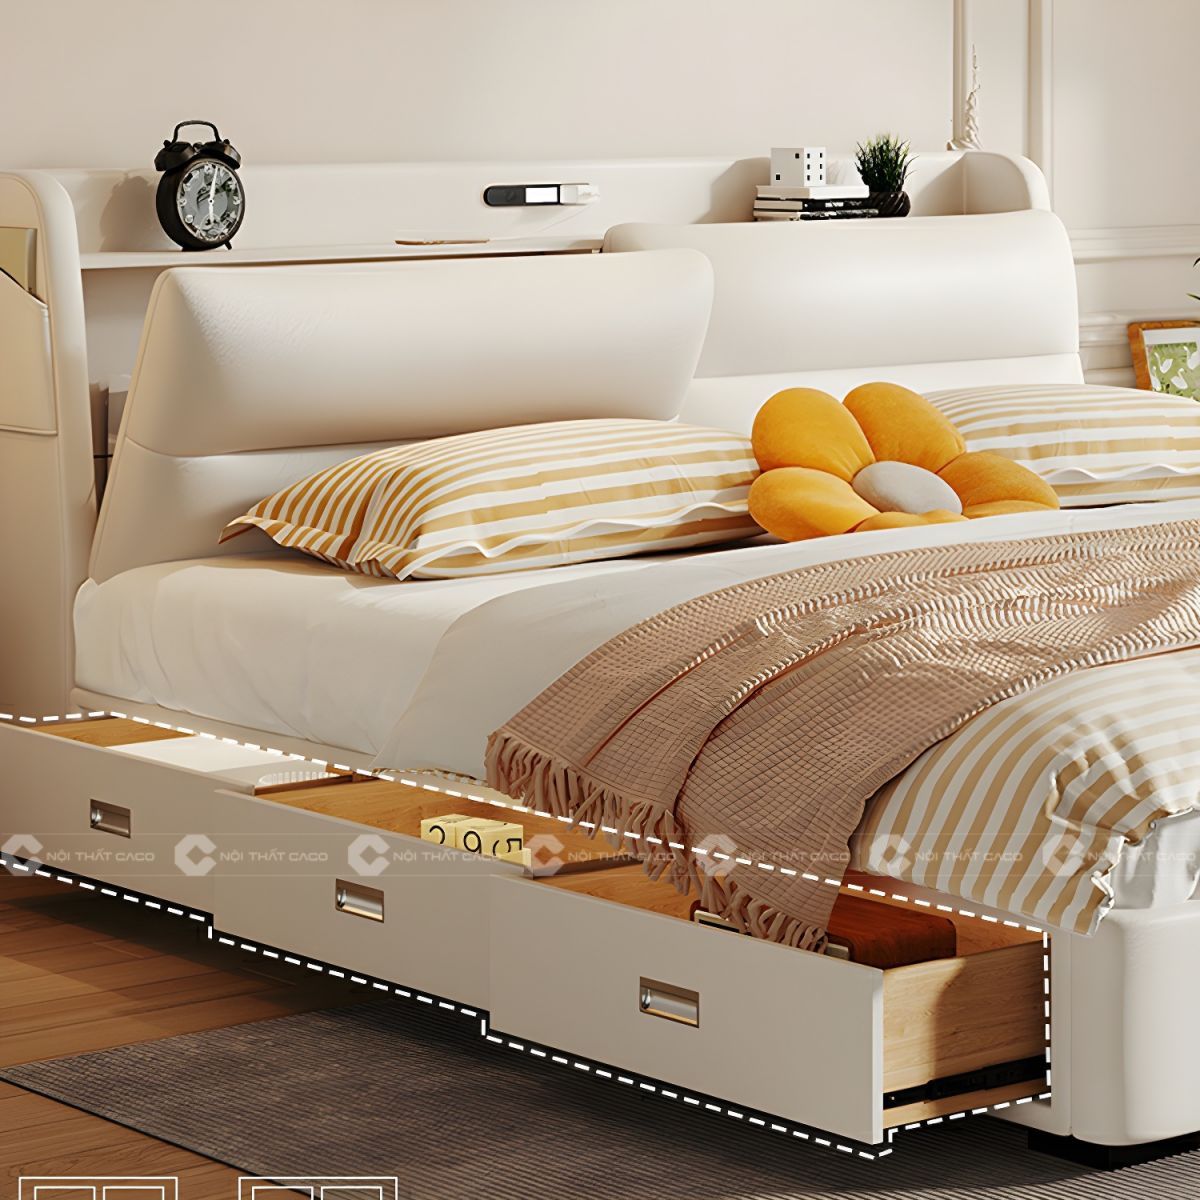 Giường ngủ gỗ công nghiệp màu trắng có hộc kéo thông minh 